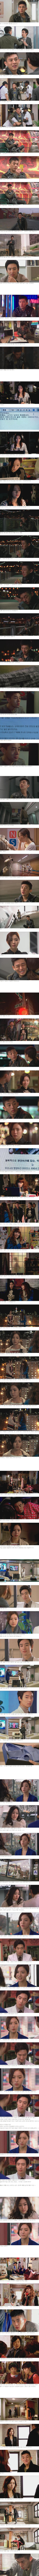 episode 3 captures for the Korean drama 'Fashion King'